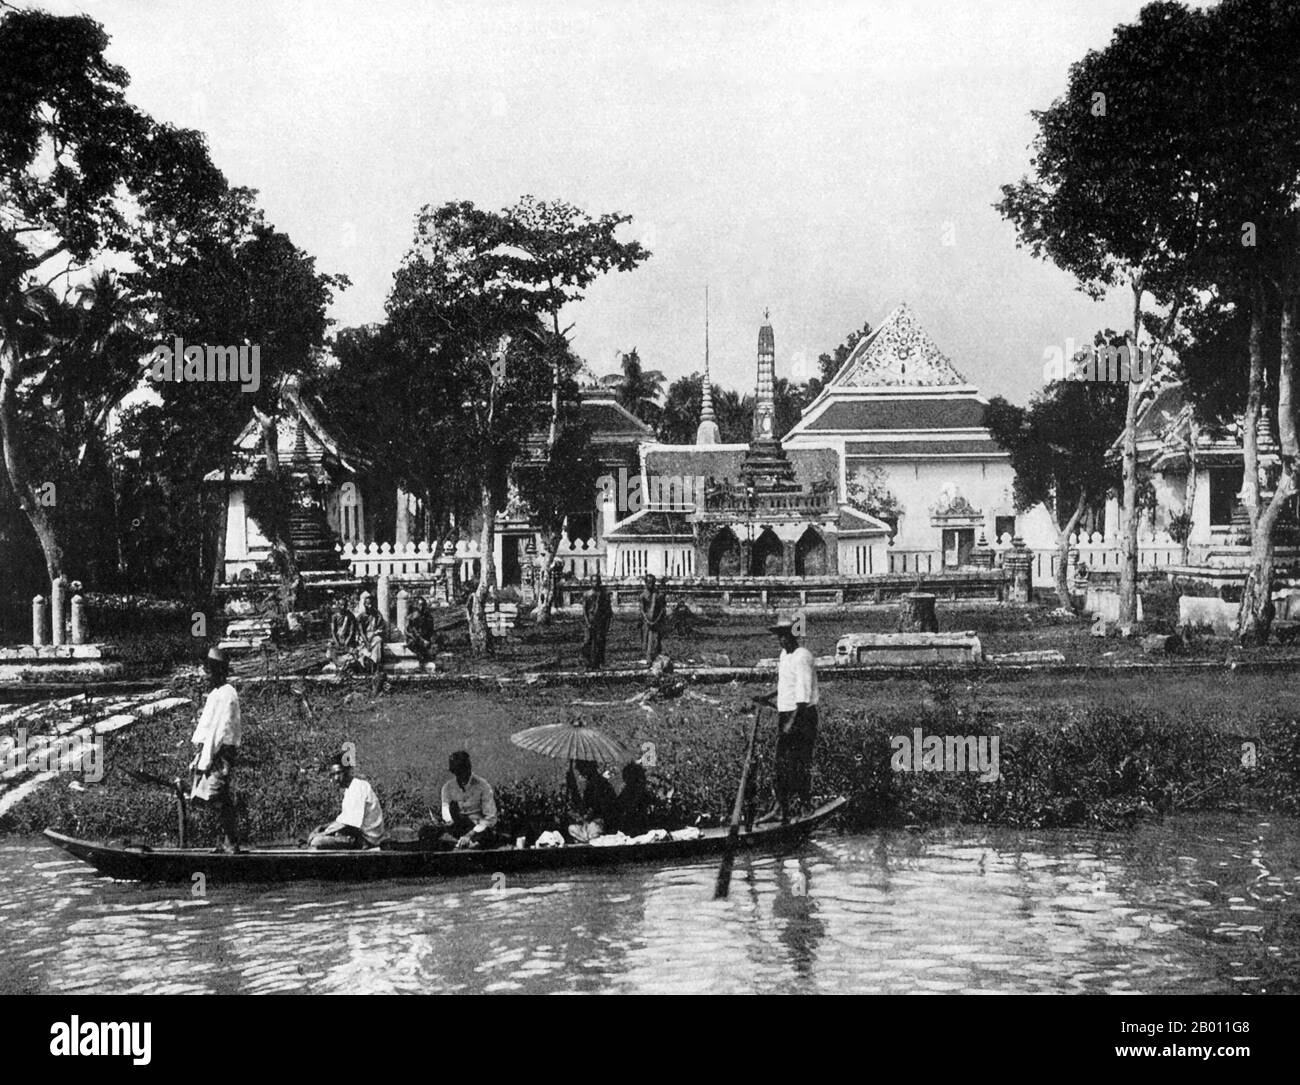 Thailand: Ein kleines Passagierboot vor einem buddhistischen Tempel in der Nähe von Bangkok, c. 1900. Um die Wende des 20. Jahrhunderts waren die meisten Siamesen Reisbauern, die entlang der Wasserwege lebten und arbeiteten. Jeder Haushalt hatte ein Boot, von dem schätzungsweise 600,000 die Kanäle und Flüsse von Bangkok befuhren. Rudern wurde von der Rückseite des Bootes aus durchgeführt. Die meisten Häuser wurden aus Holz und Bambus gebaut und auf Stelzen mit einer Leiter zum Wasser gebaut. Stockfoto